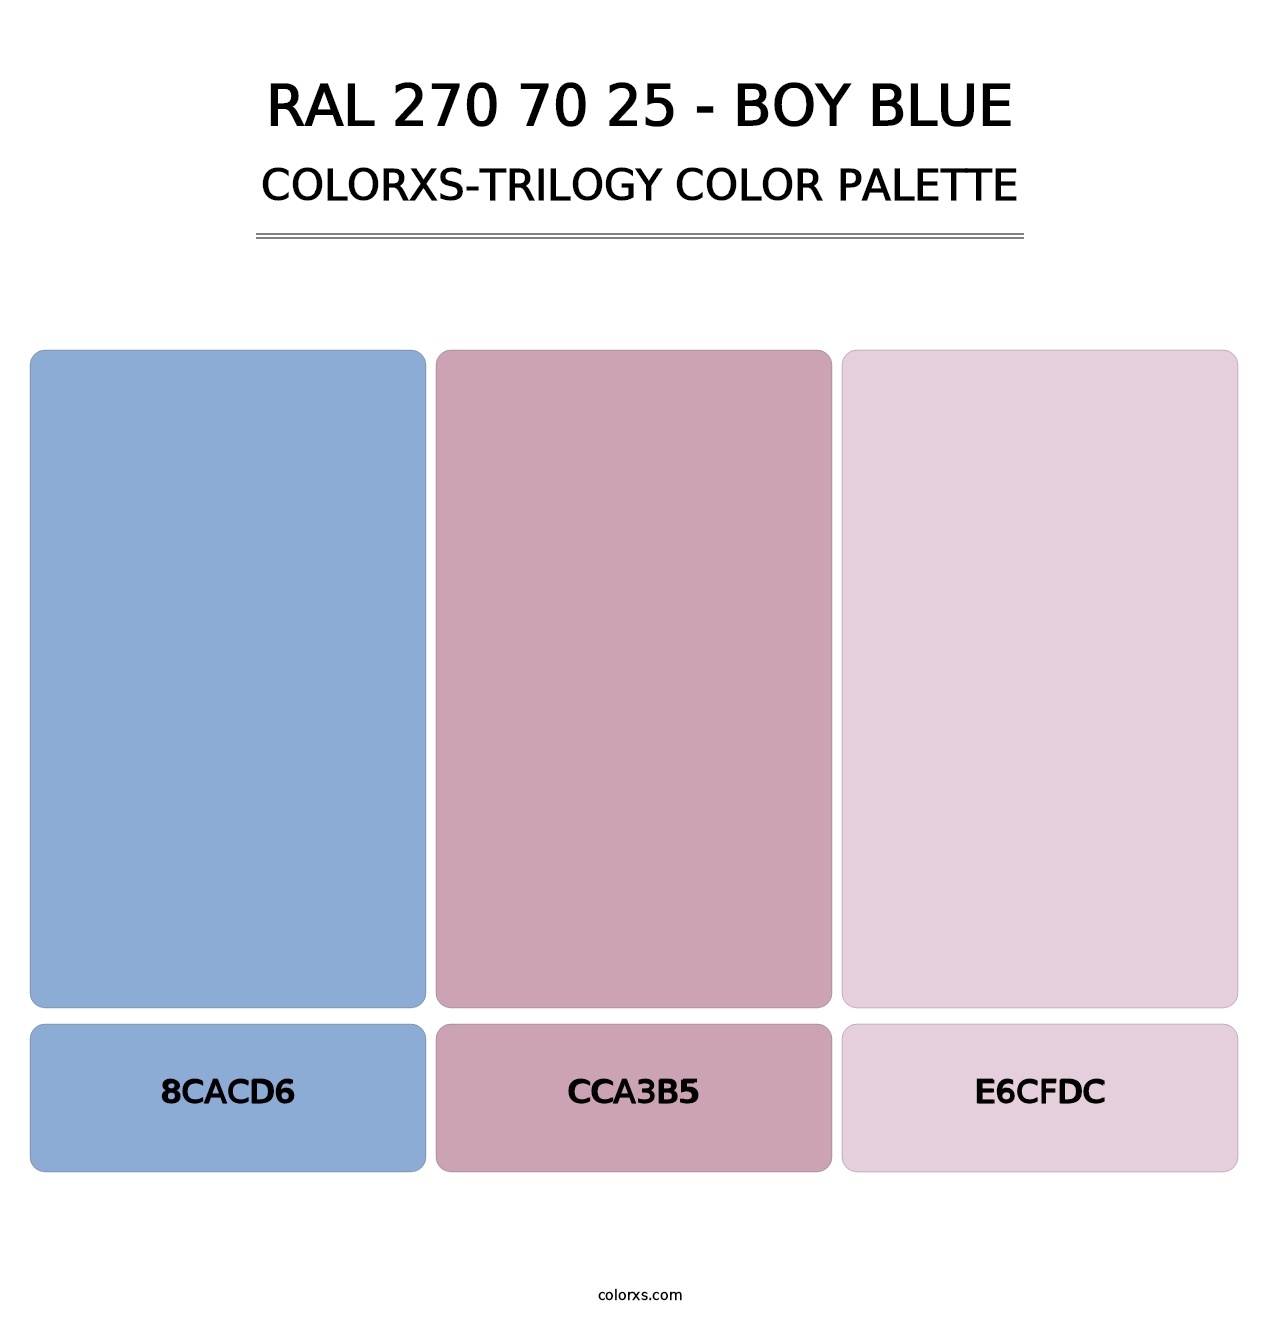 RAL 270 70 25 - Boy Blue - Colorxs Trilogy Palette